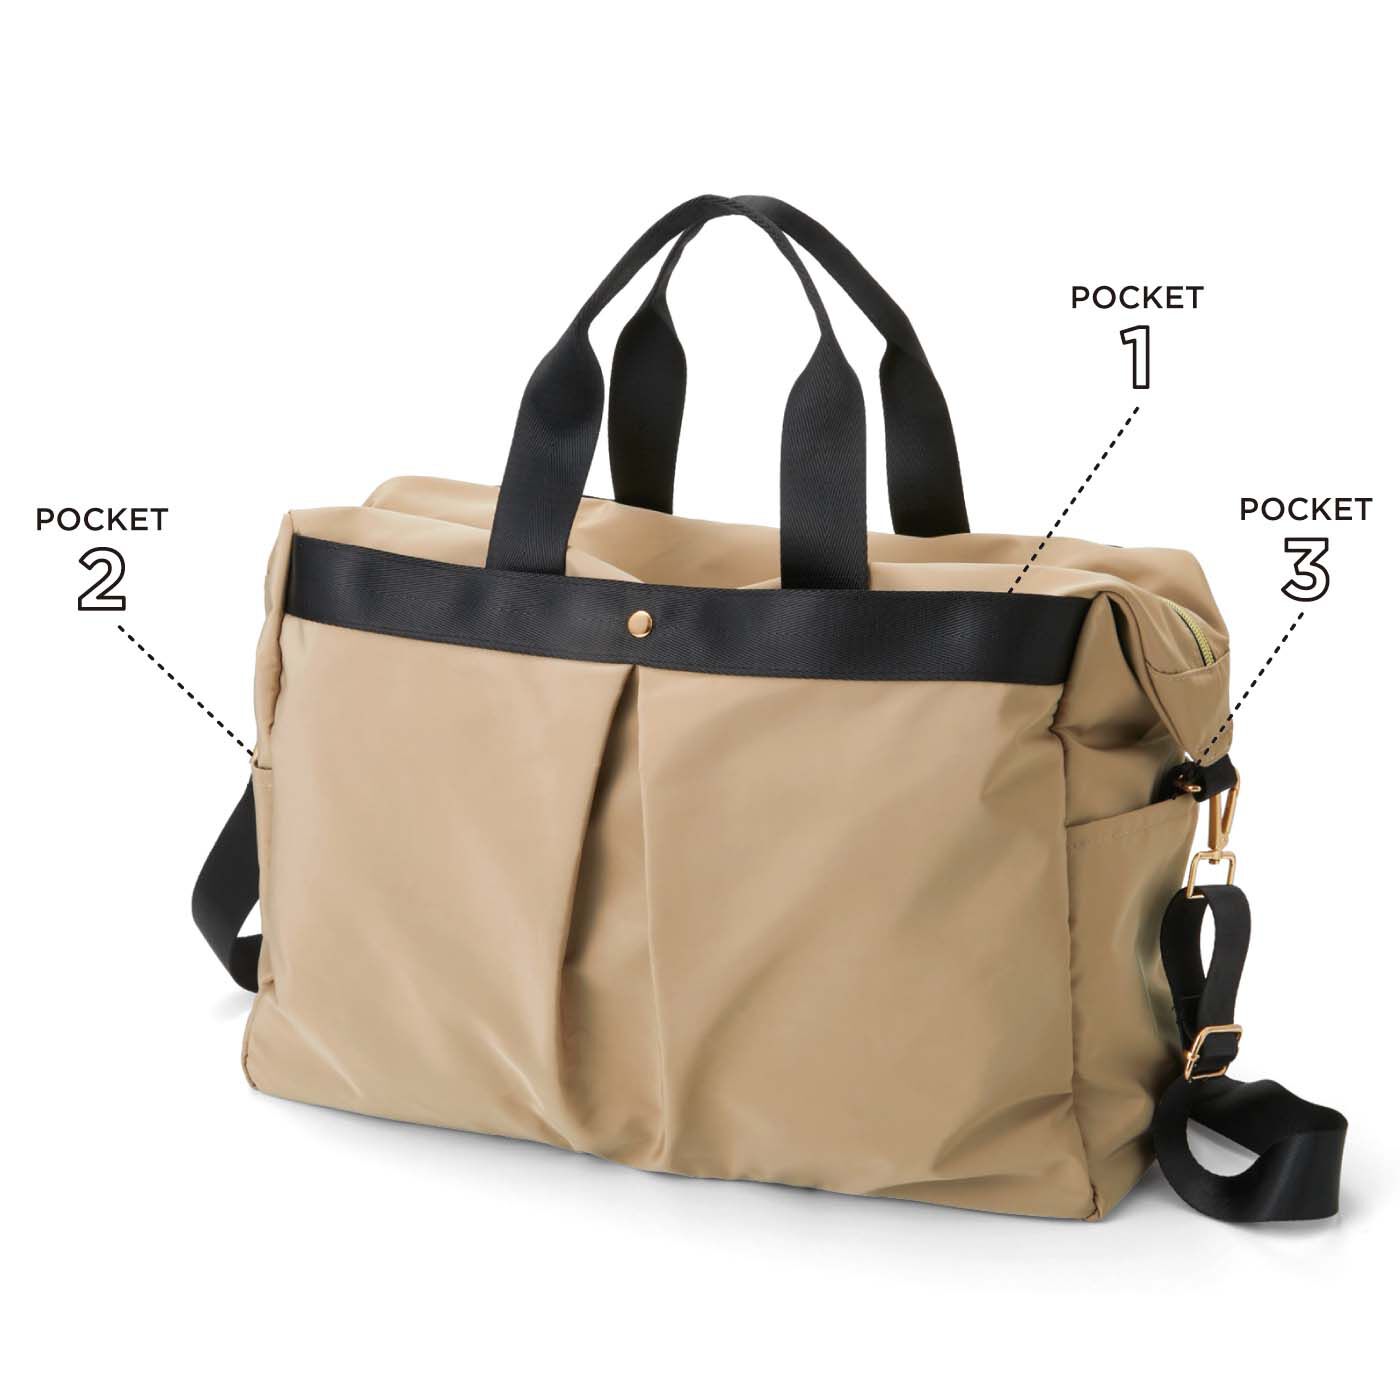 フェリシモの雑貨Kraso|7ポケットで使いやすい 大きめボストンバッグ|大小合わせて7つのポケット付き。